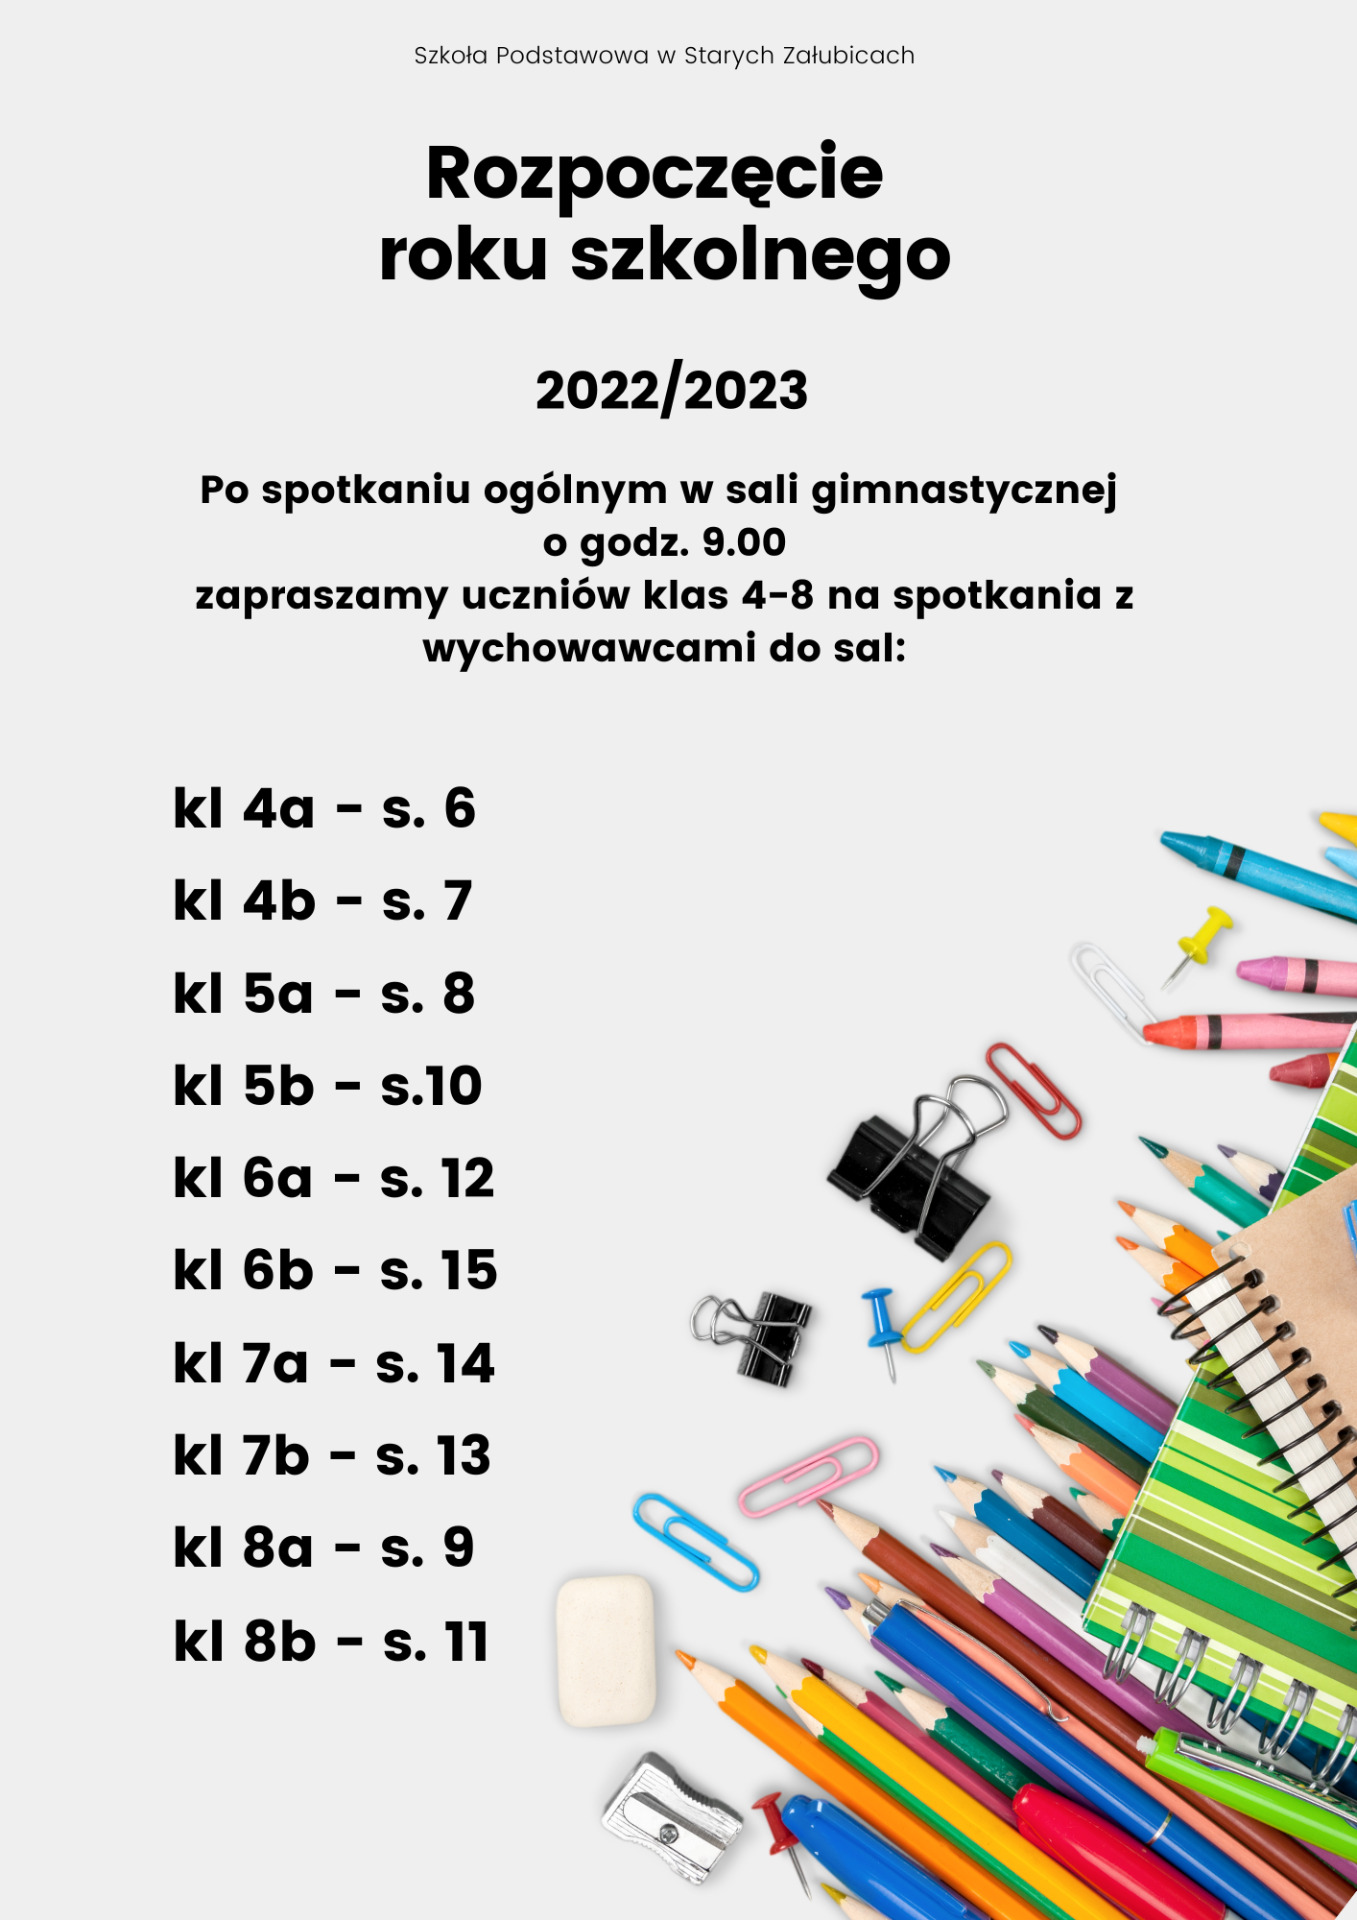 Rozpoczęcie roku szkolnego 2022/2023 - Obrazek 3